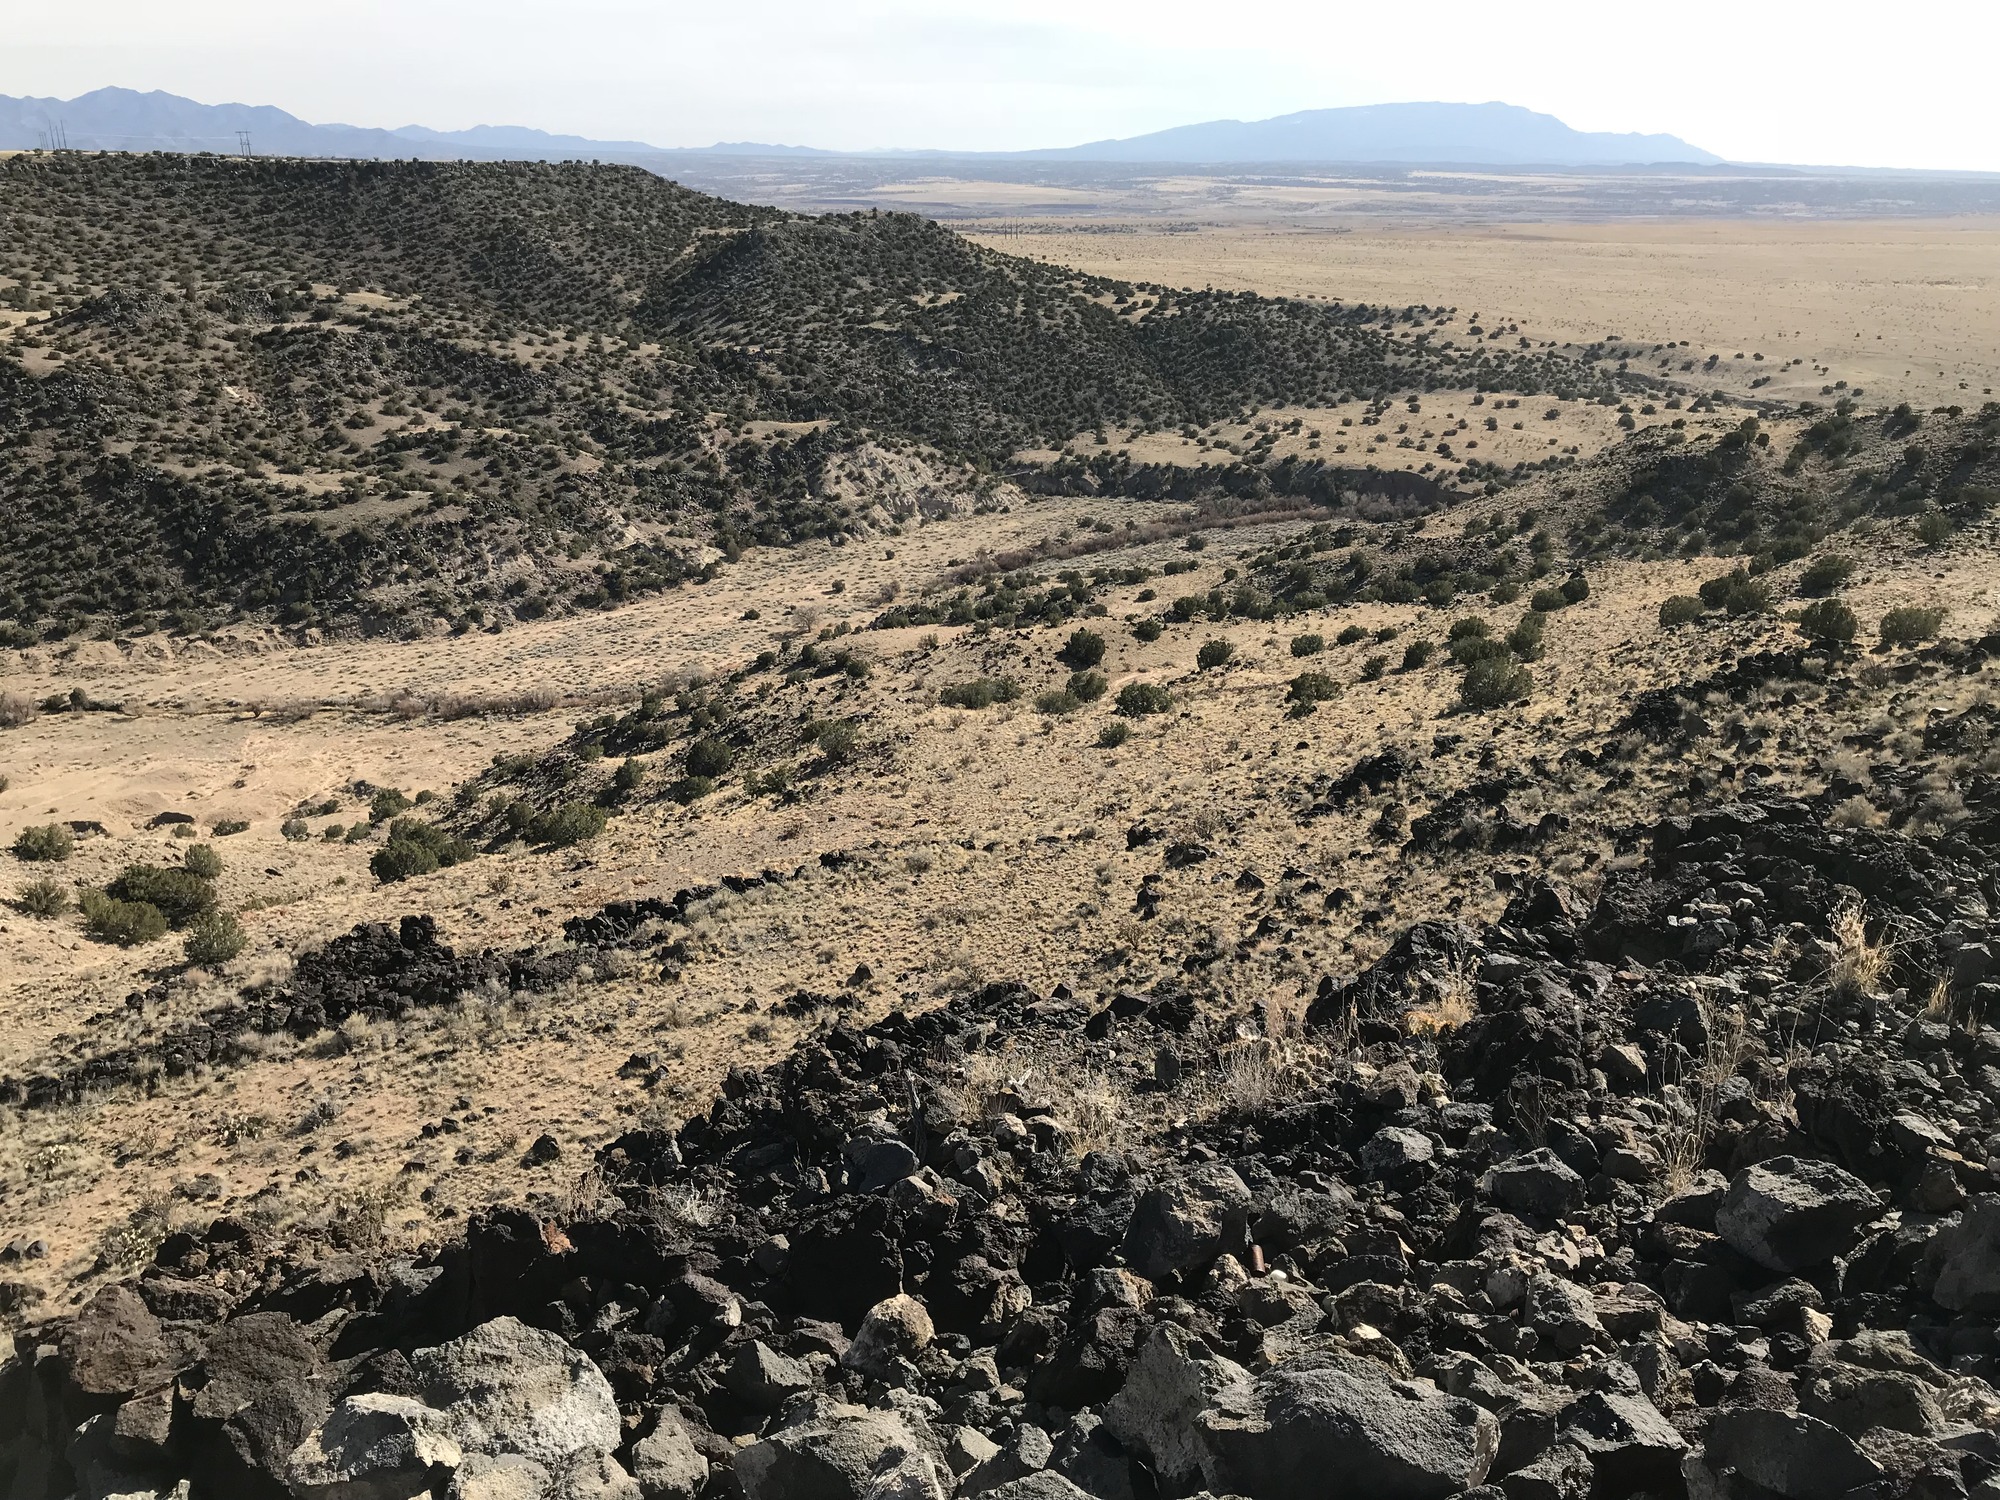 Views from atop La Bajada Mesa outside of Santa Fe, NM